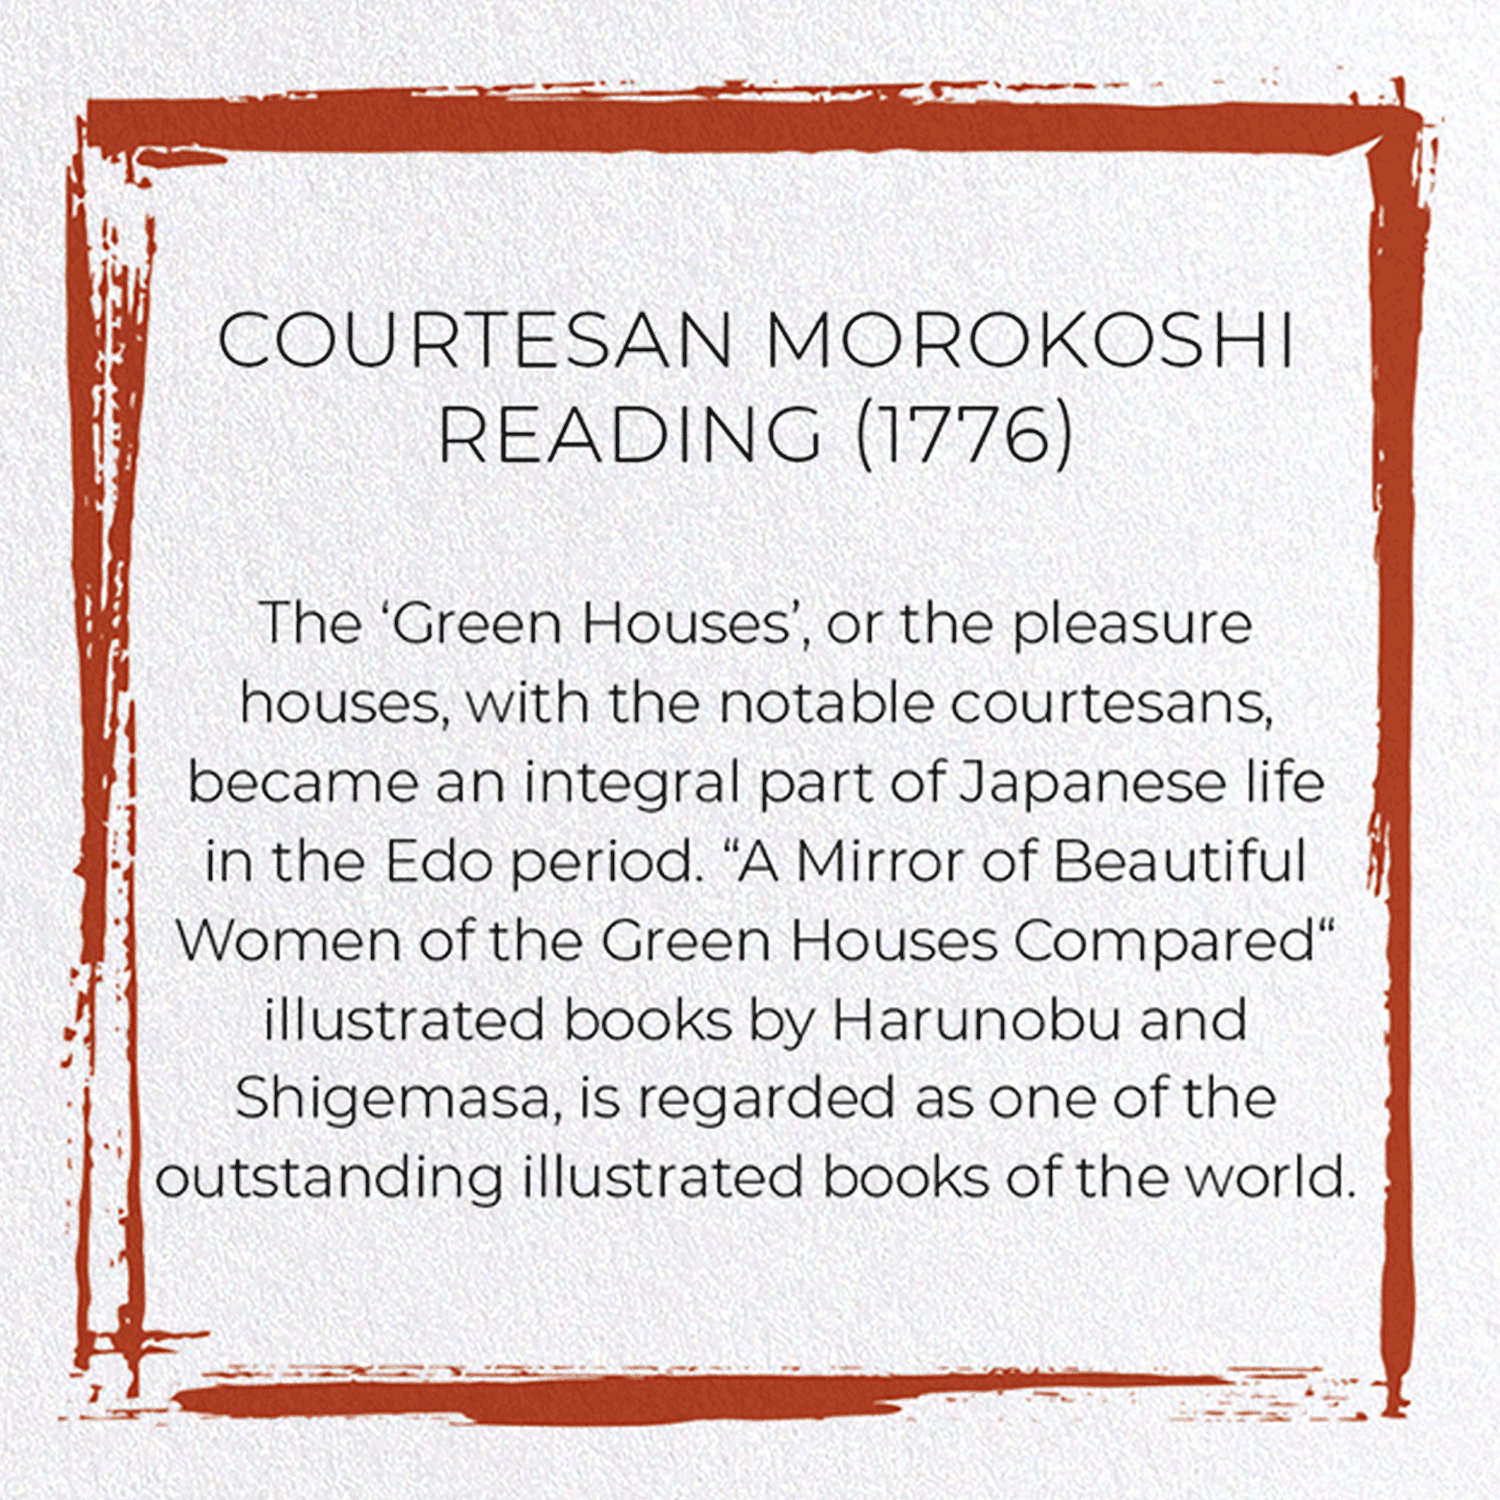 COURTESAN MOROKOSHI READING (1776)